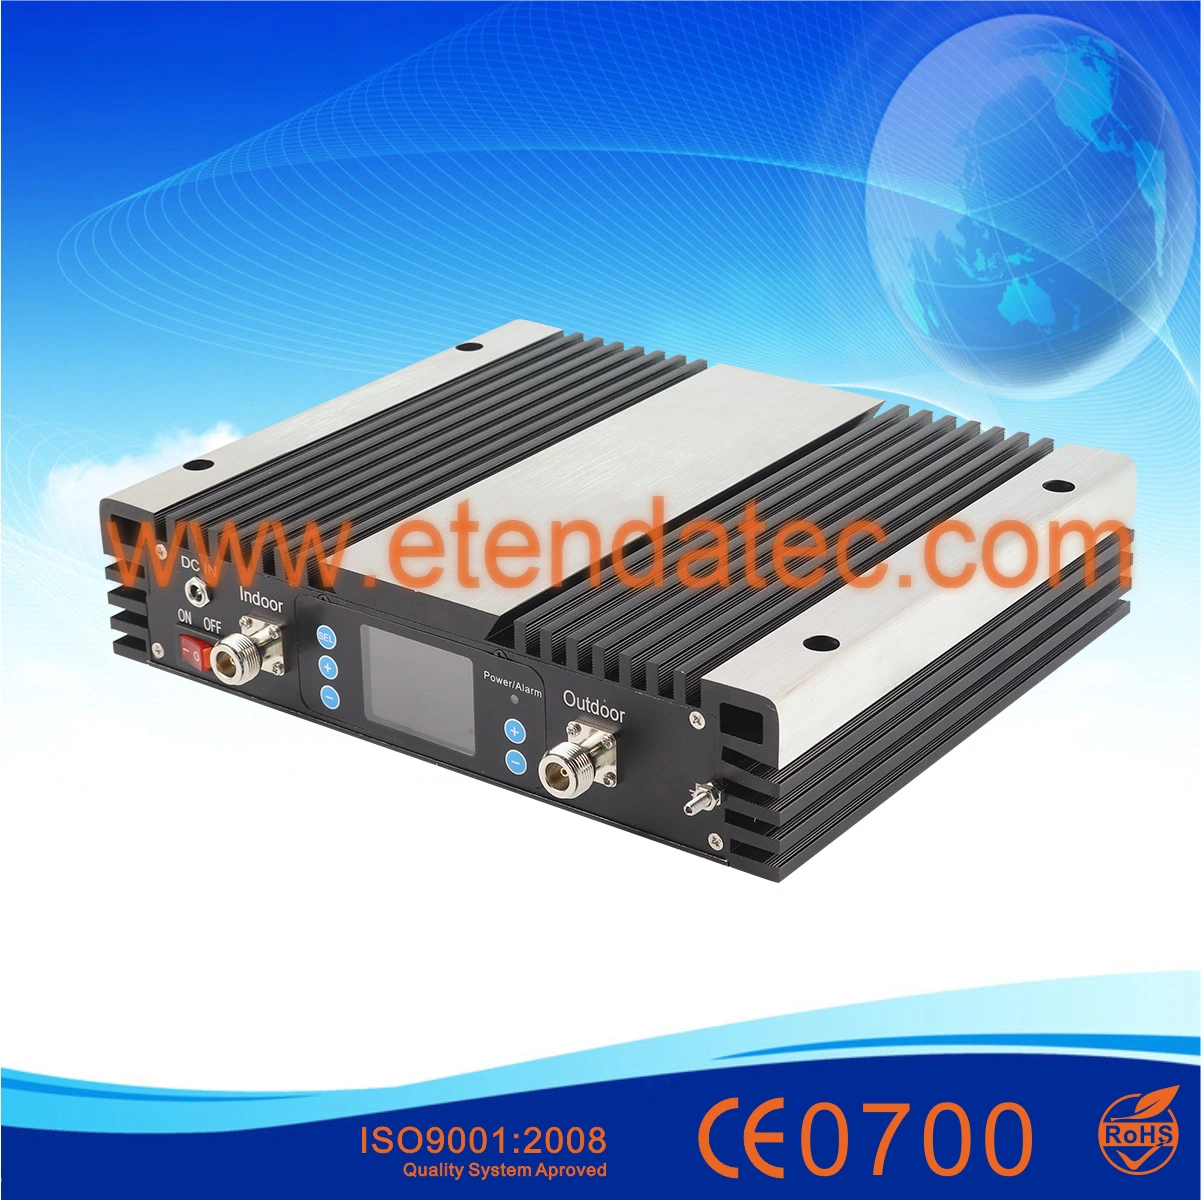 Tetre de alta potencia de 400MHz Iden/amplificador de señal celular con pantalla LCD display